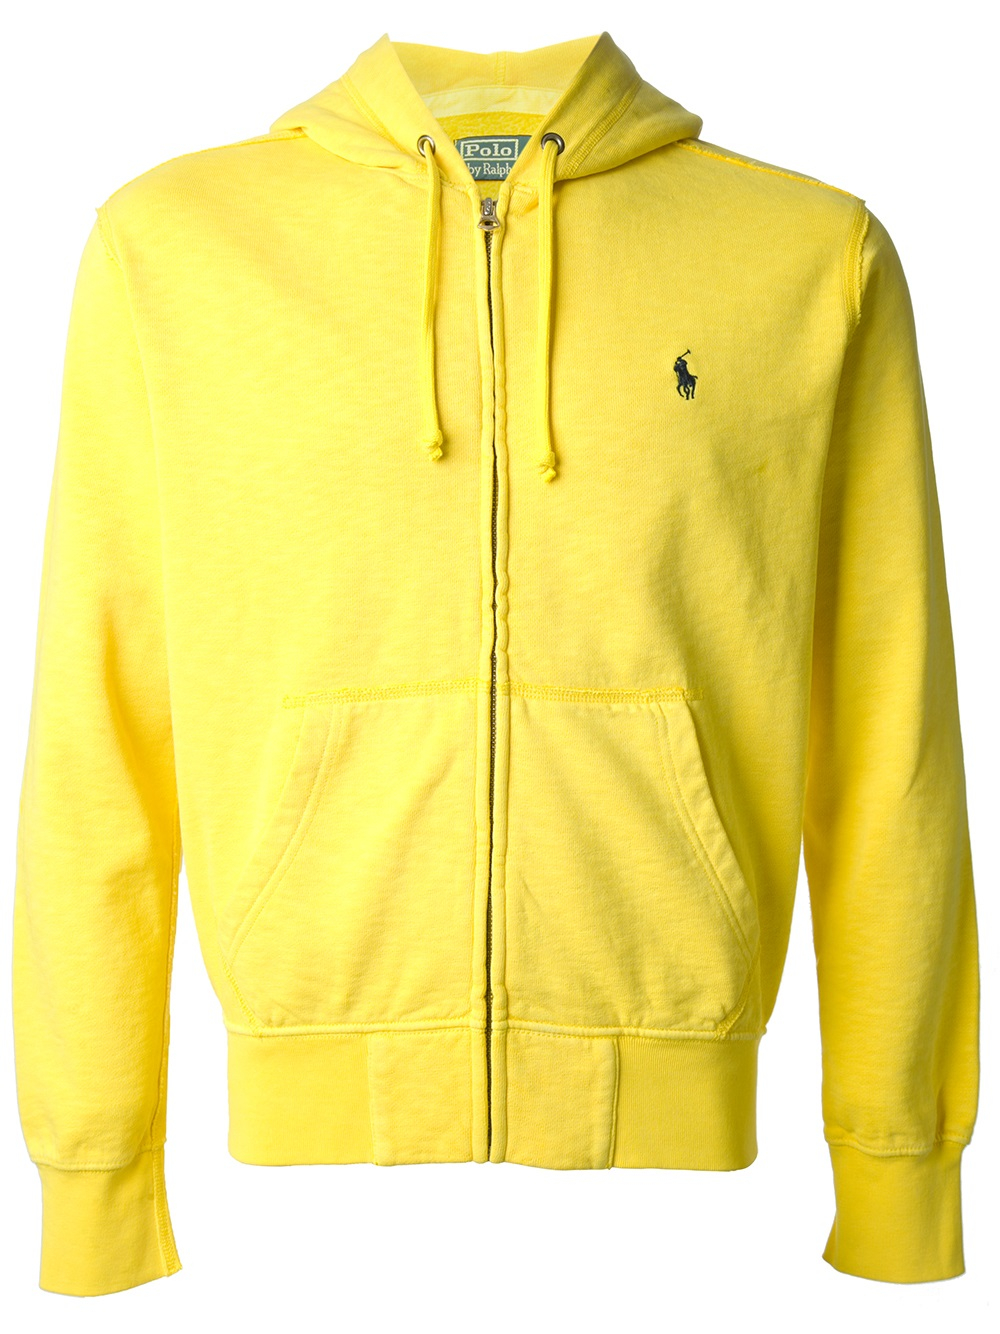 Lyst - Polo Ralph Lauren Zip Front Hoodie in Yellow for Men